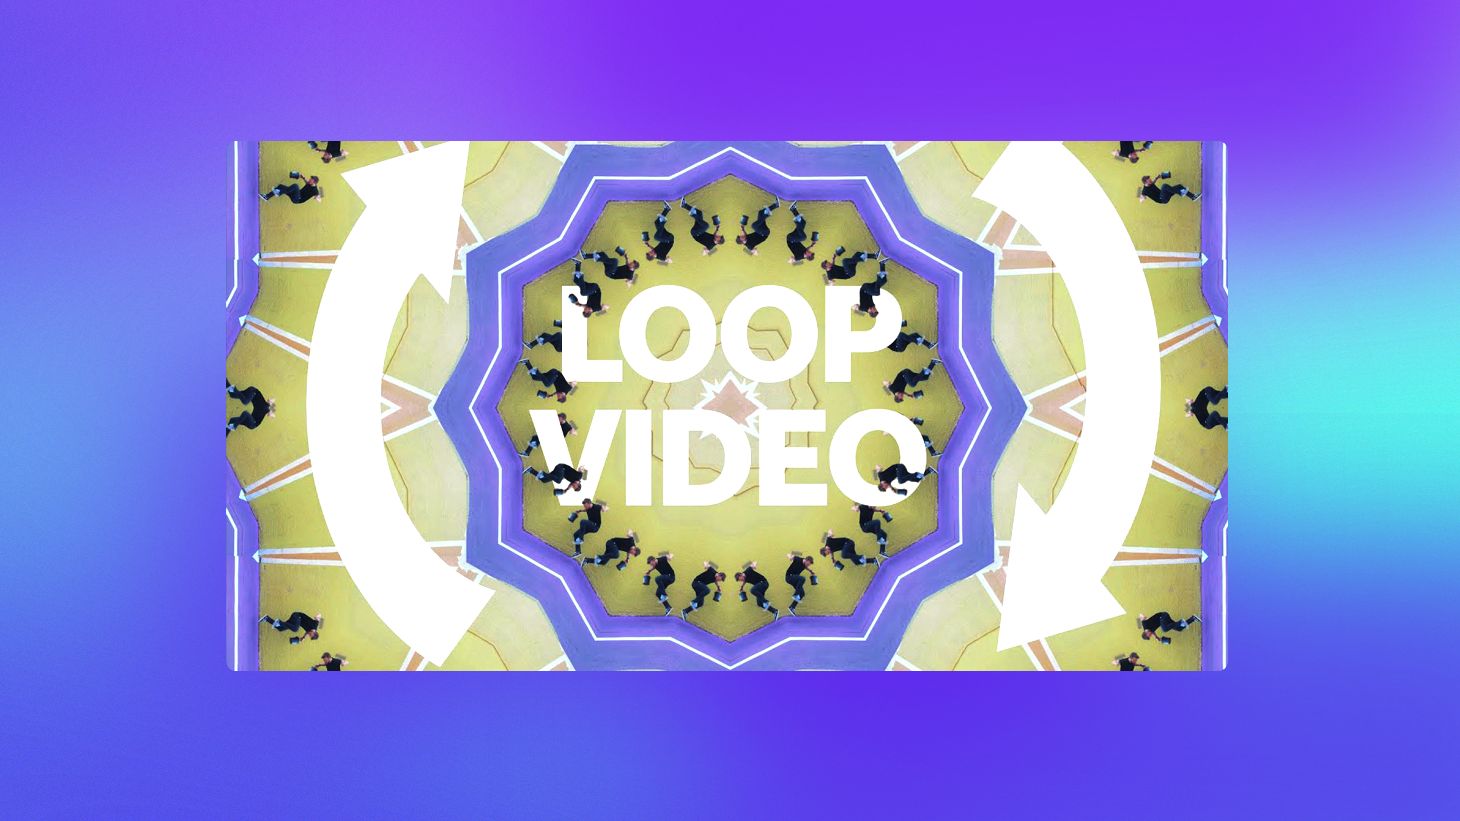 Loop - Repeat  Videos 